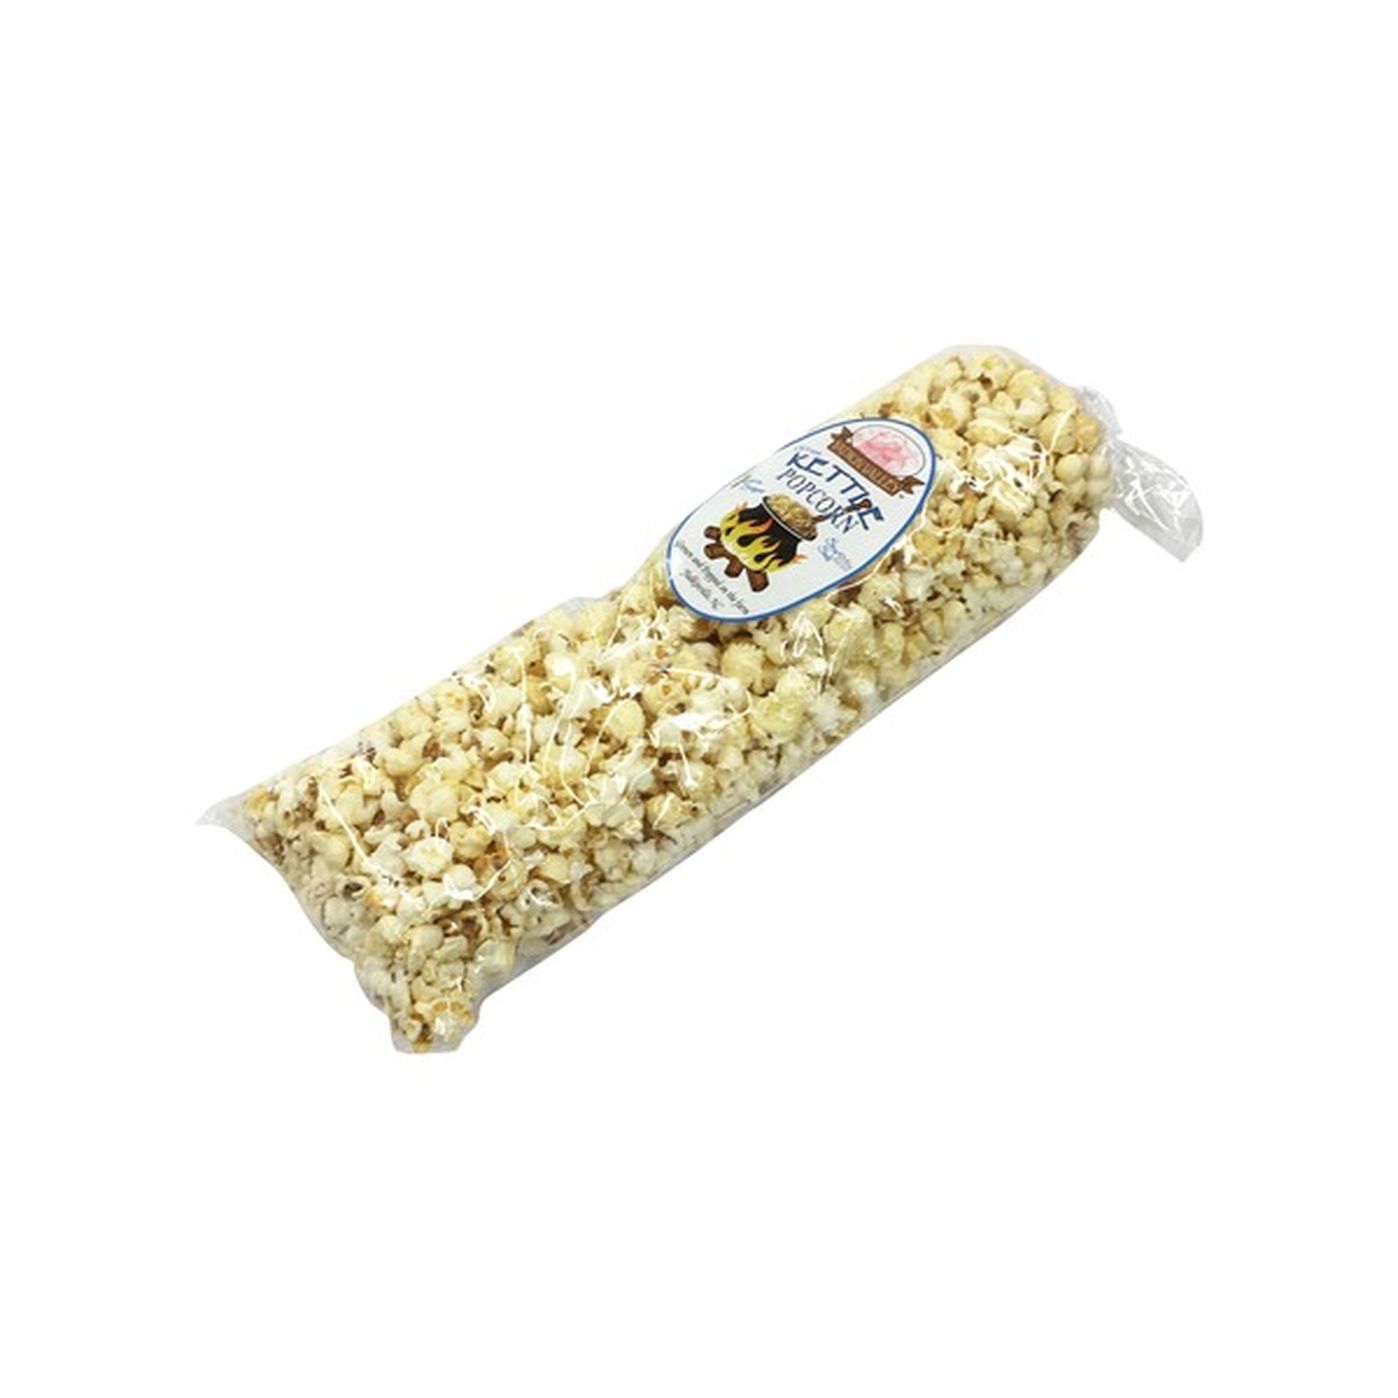 Yadkin Valley Popcorn Popcorn, Kettle (7 oz) Delivery or Pickup Near Me ...